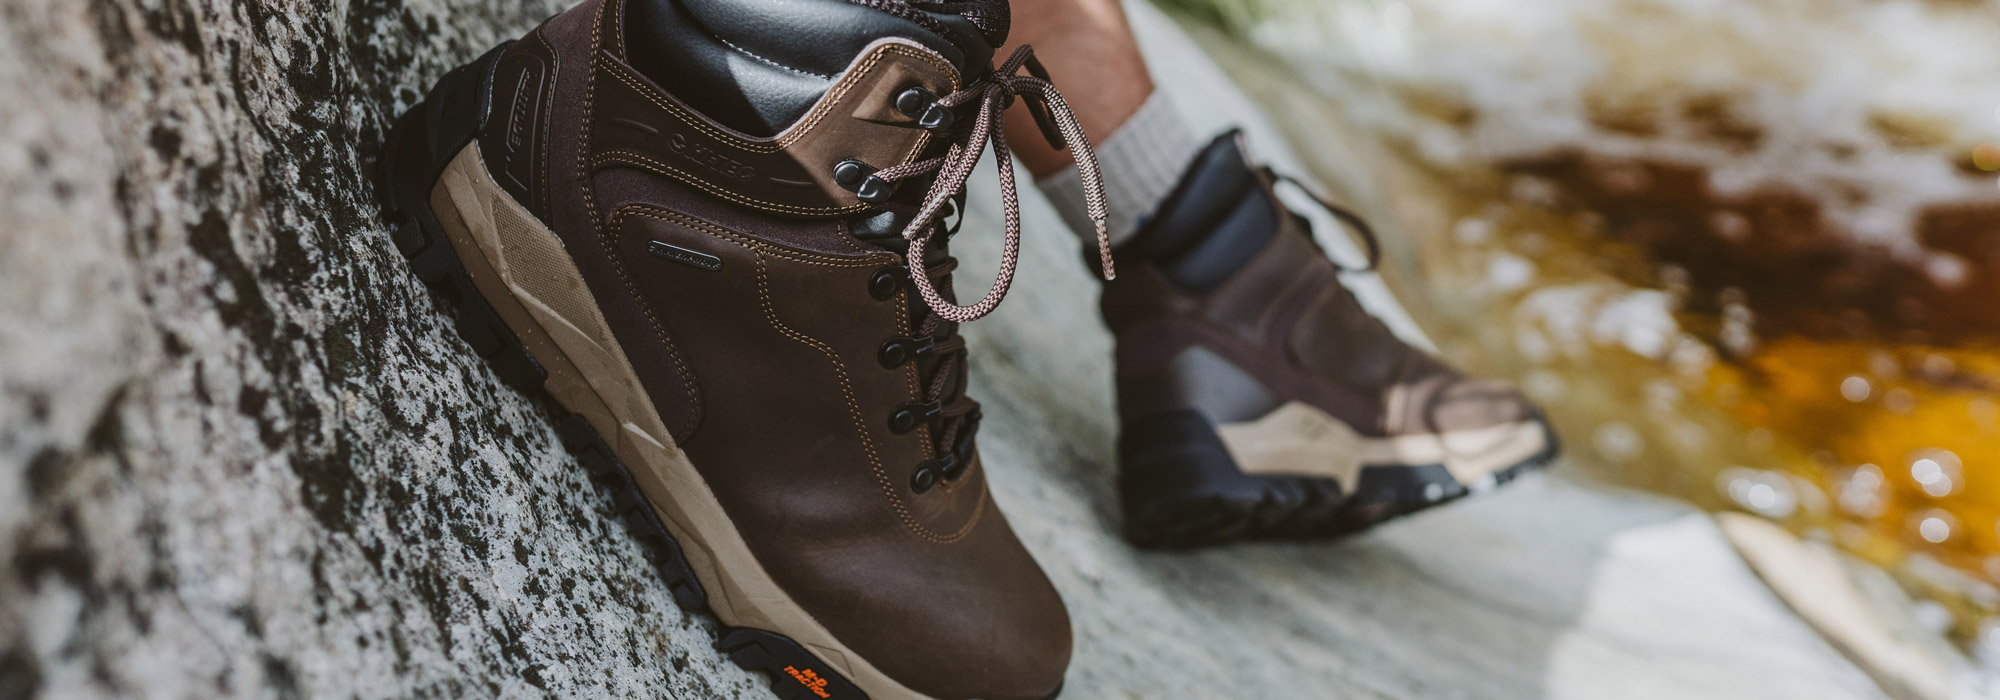 Hi-Tec Walking Boots, Hiking Boots, Shoes & Sandals